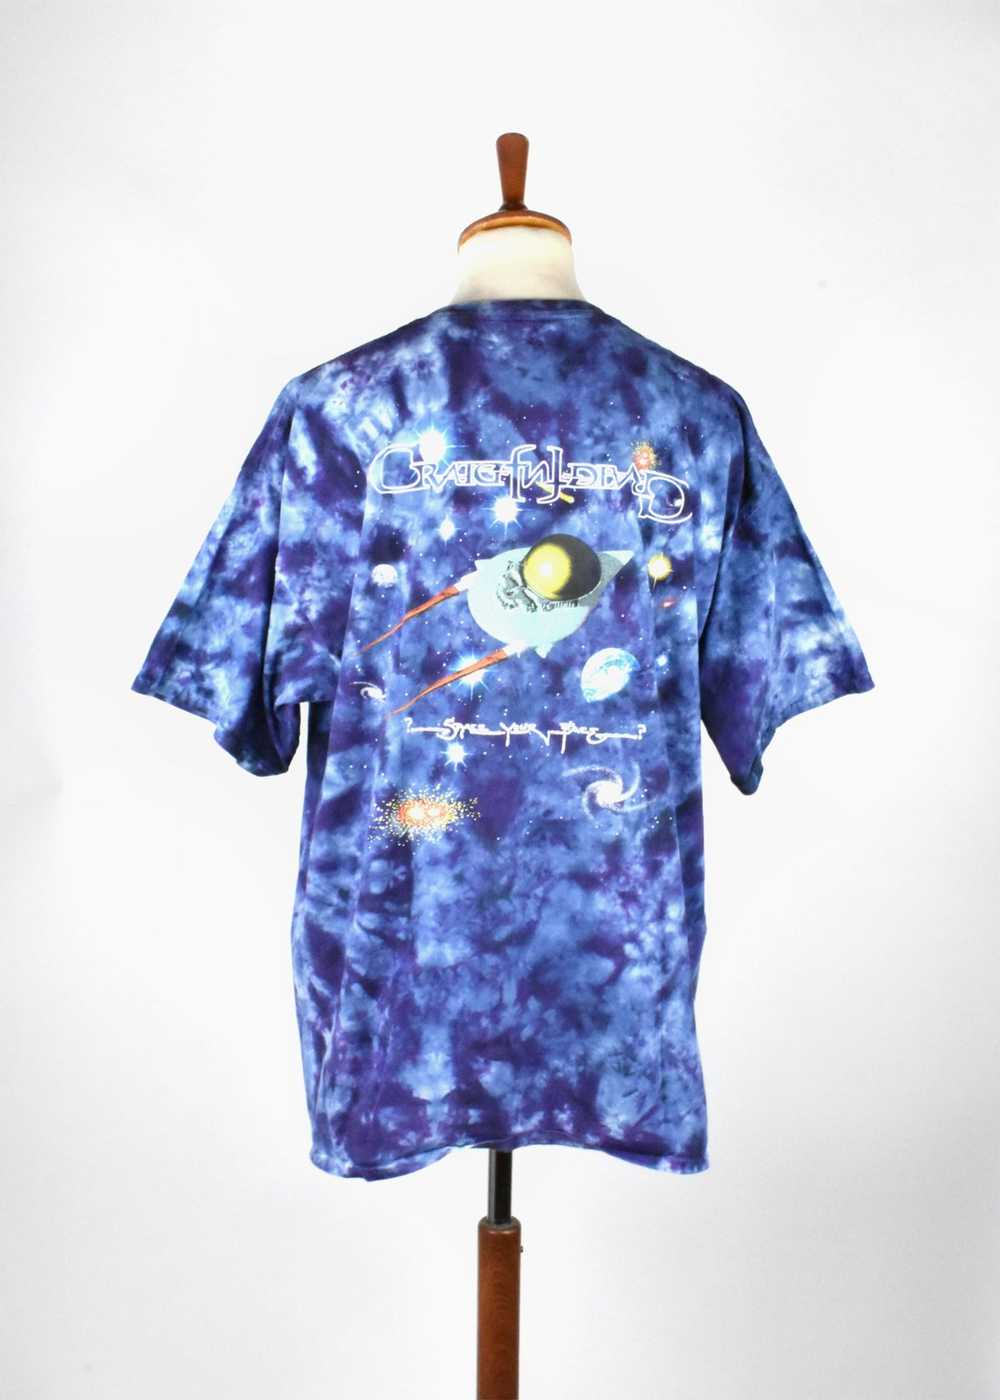 1997 Grateful Dead T-Shirt, Space Your Face - image 6